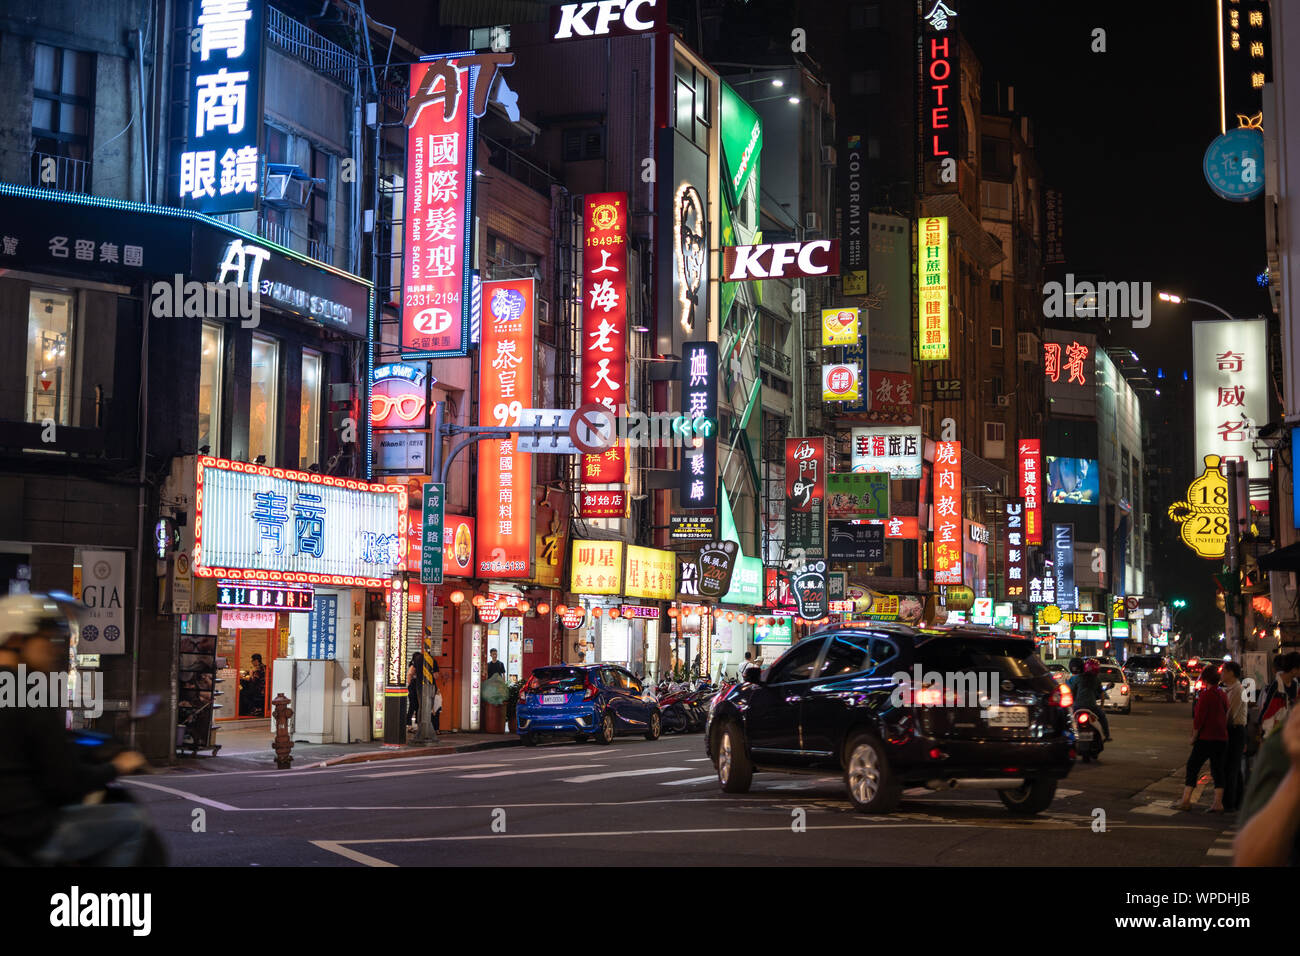 Taipei, Taiwan: belebten Straße bei Nacht durch bunte Werbung beleuchtet, Leuchtreklame mit chinesischen Schriftzeichen. Stockfoto